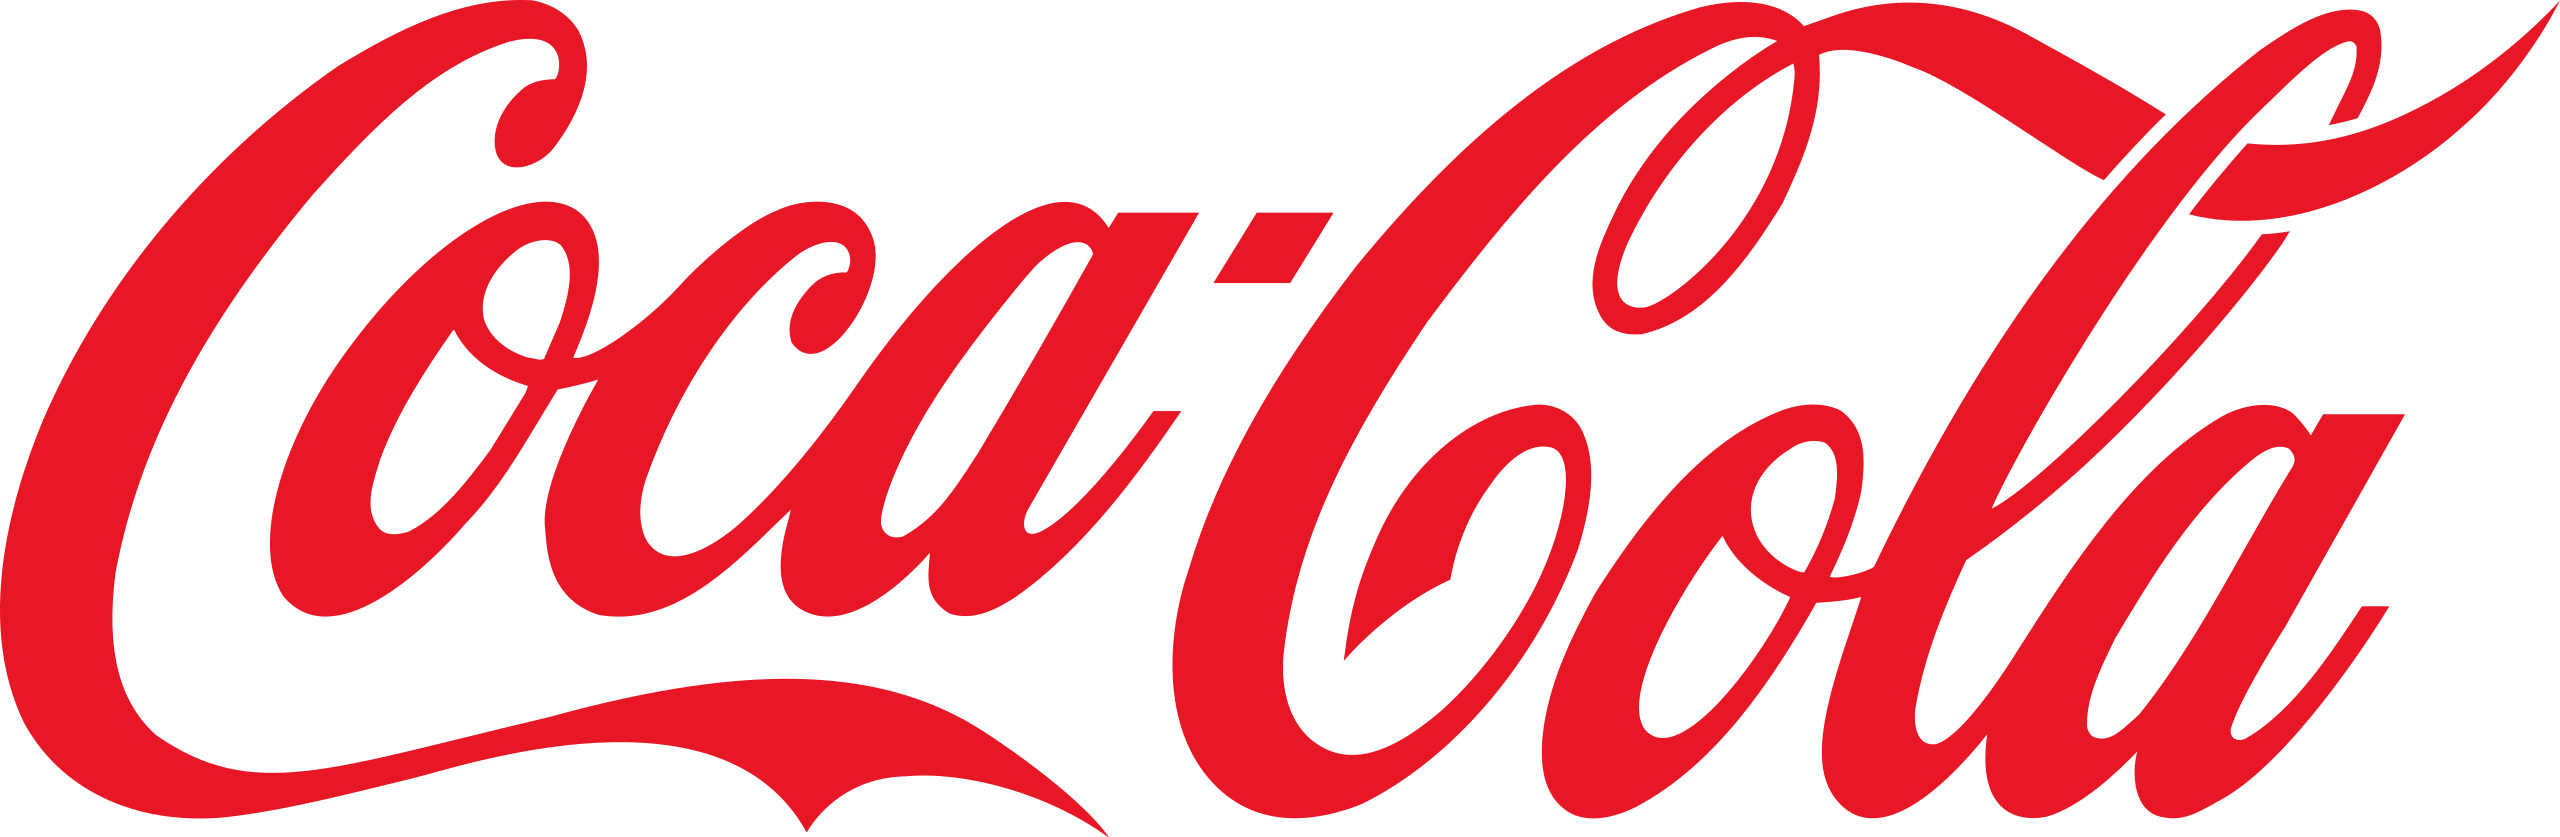 Logo van Coca-cola